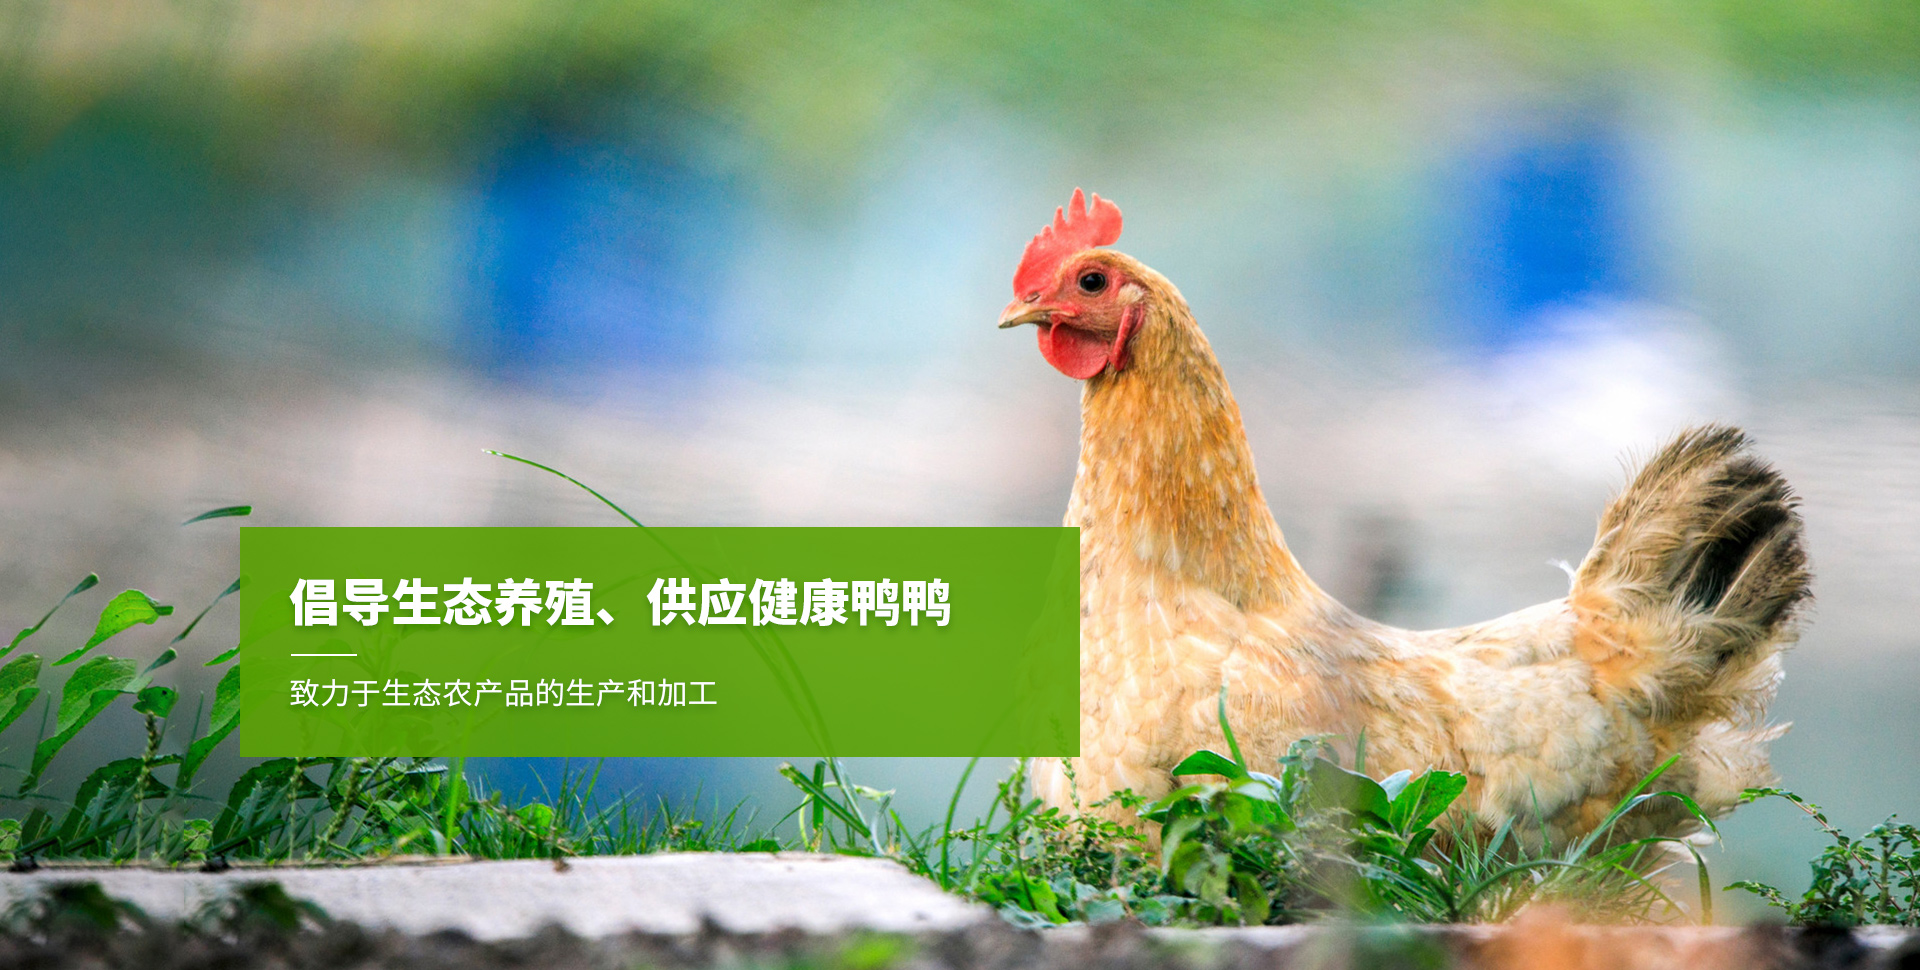 上海老杜农业发展股份有限公司